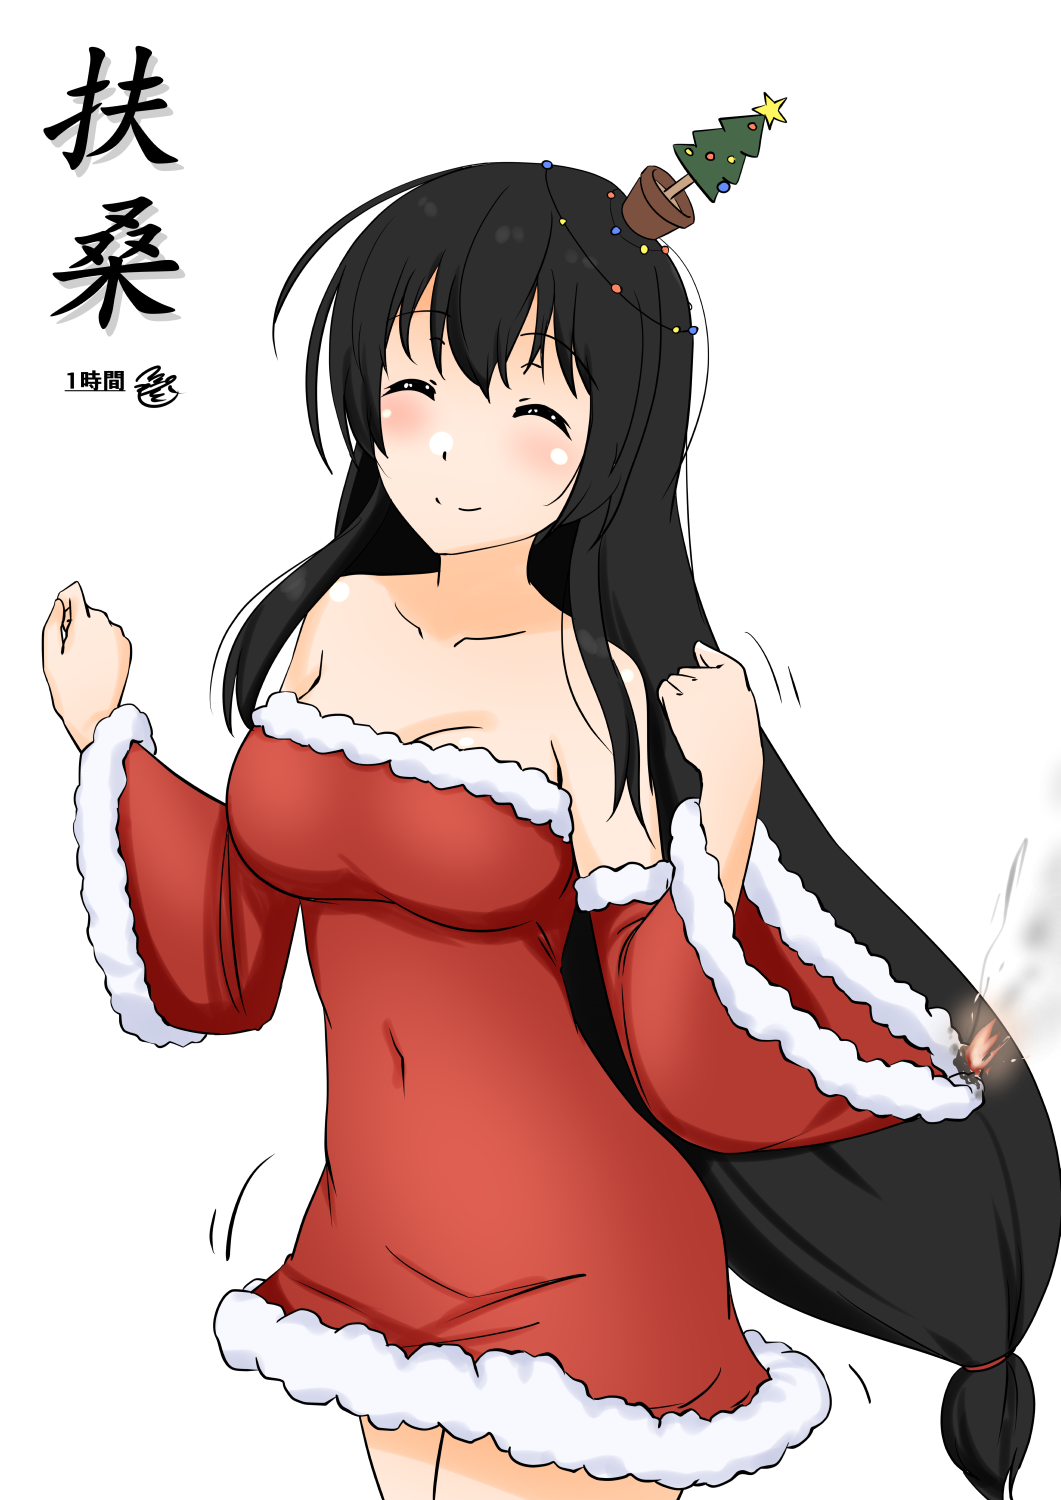 Anime Christmas Christmas Clothes Anime Girls Kantai Collection Fusou KanColle Long Hair Black Hair  1061x1500